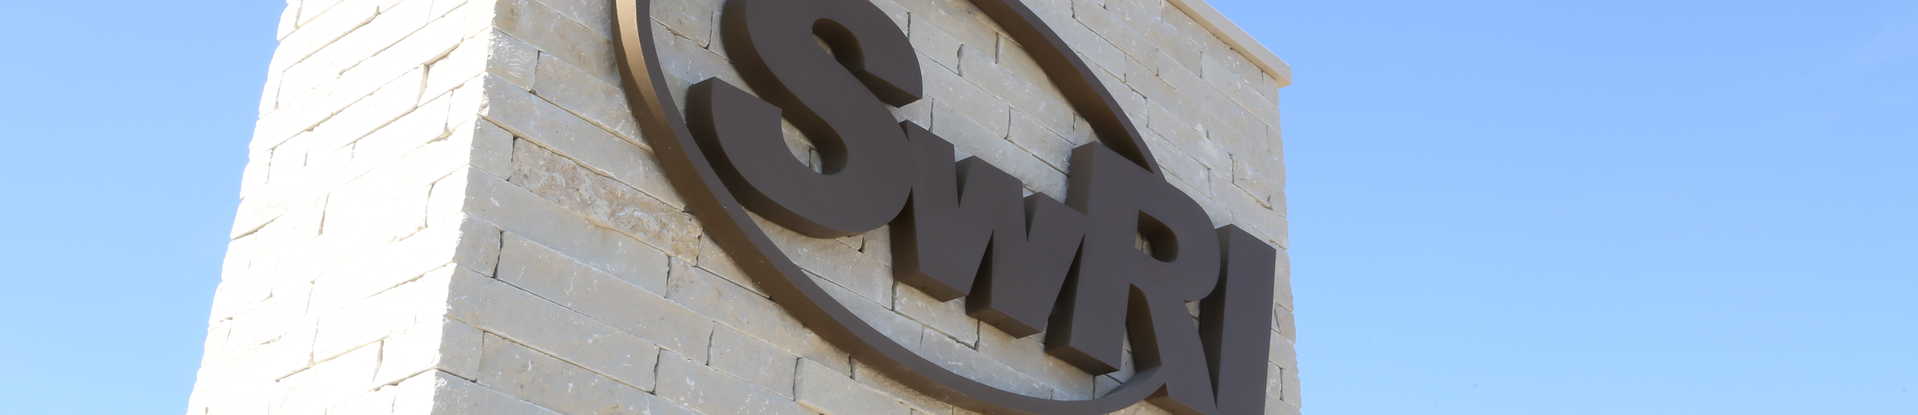 Press Release-SwRI announces record 2021 consolidated revenues of $726 million